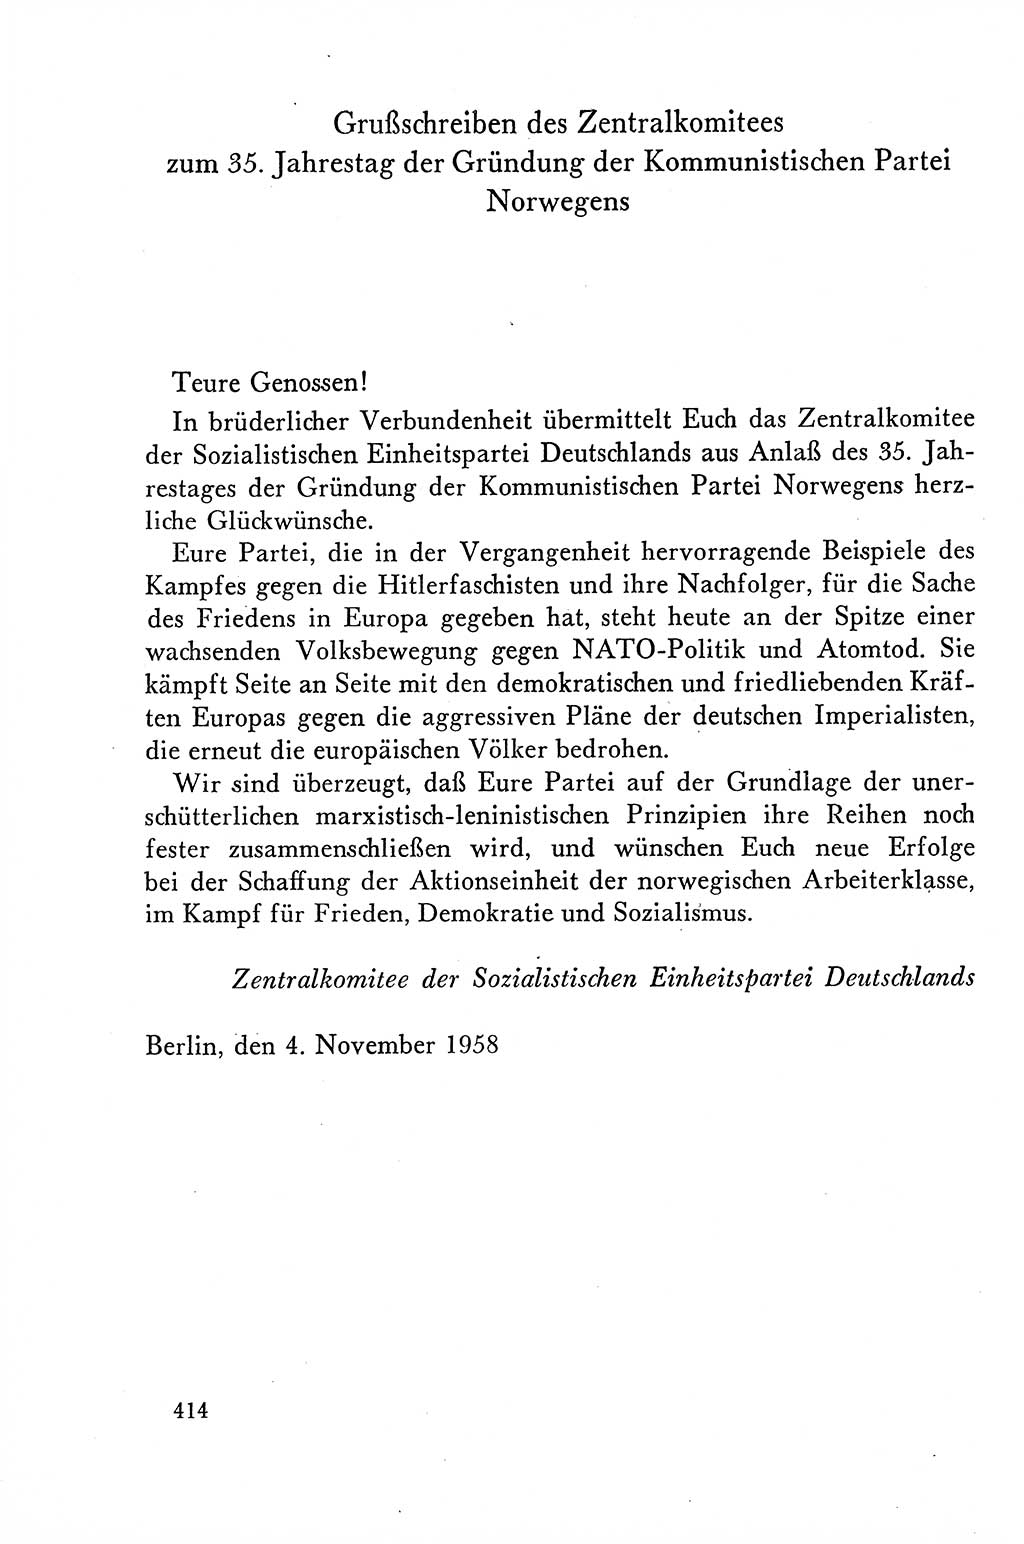 Dokumente der Sozialistischen Einheitspartei Deutschlands (SED) [Deutsche Demokratische Republik (DDR)] 1958-1959, Seite 414 (Dok. SED DDR 1958-1959, S. 414)